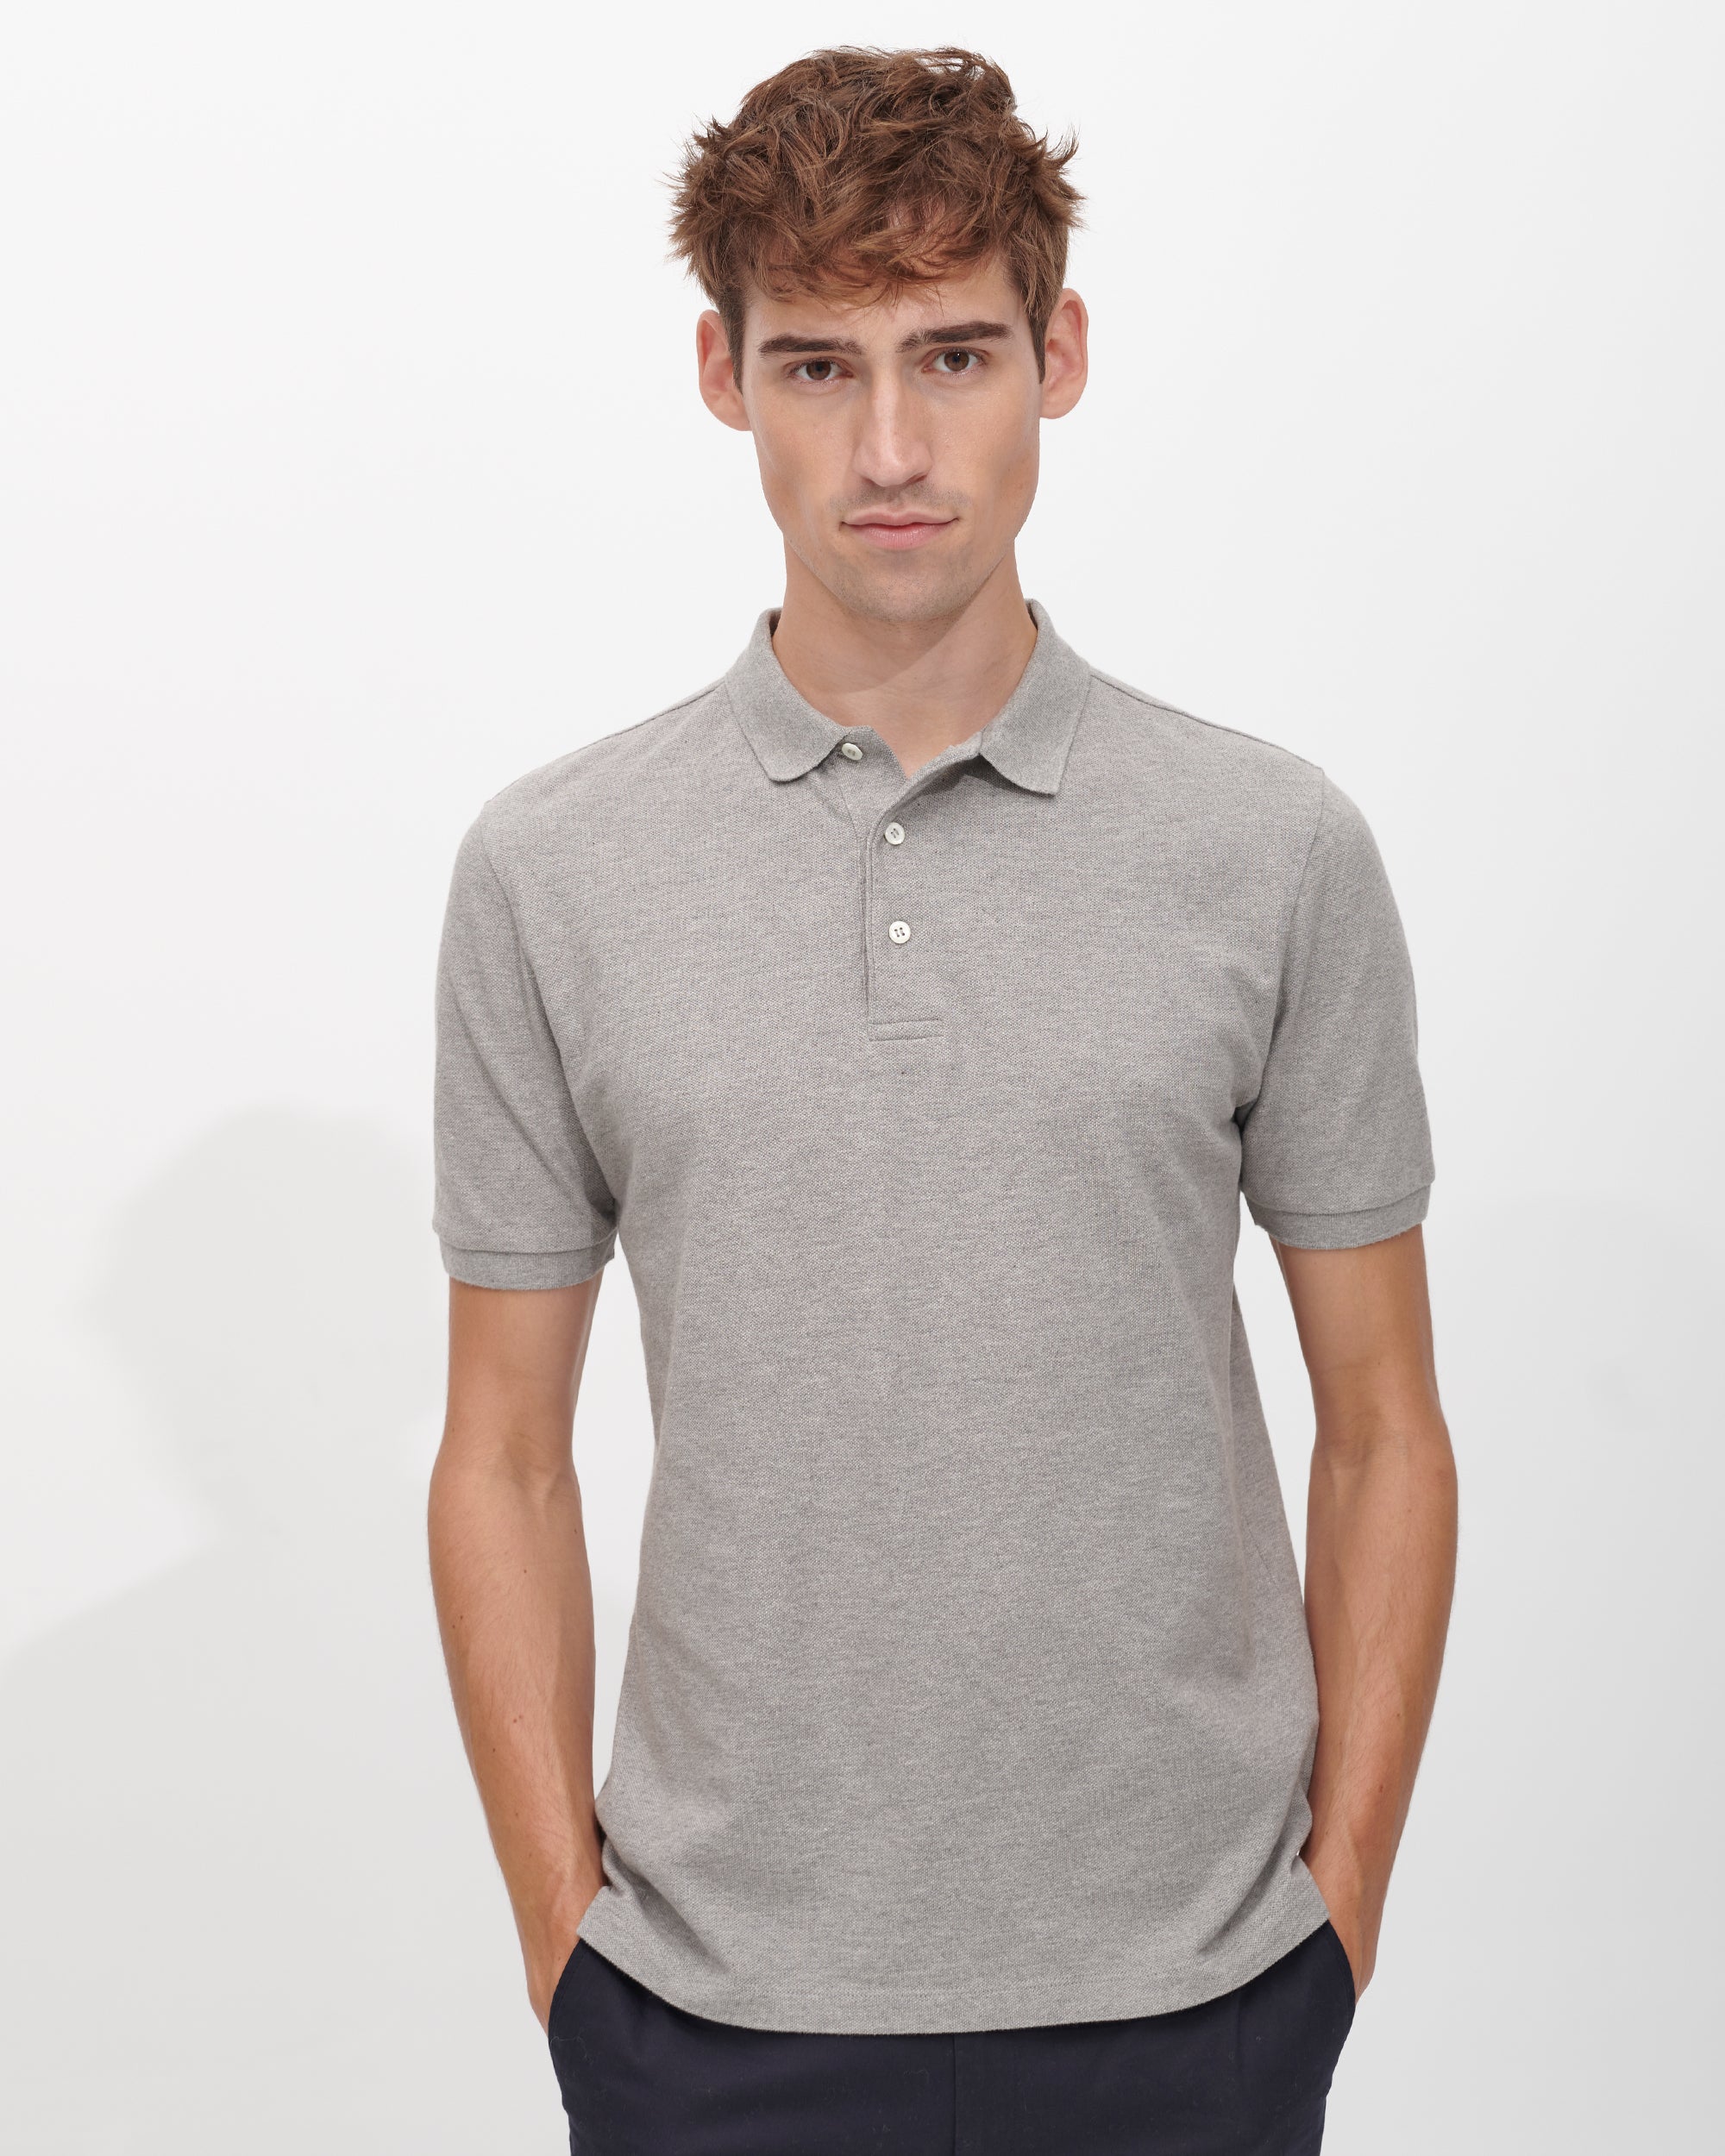 Das Perfekte Poloshirt | Premium Polohemd für Herren in Grau